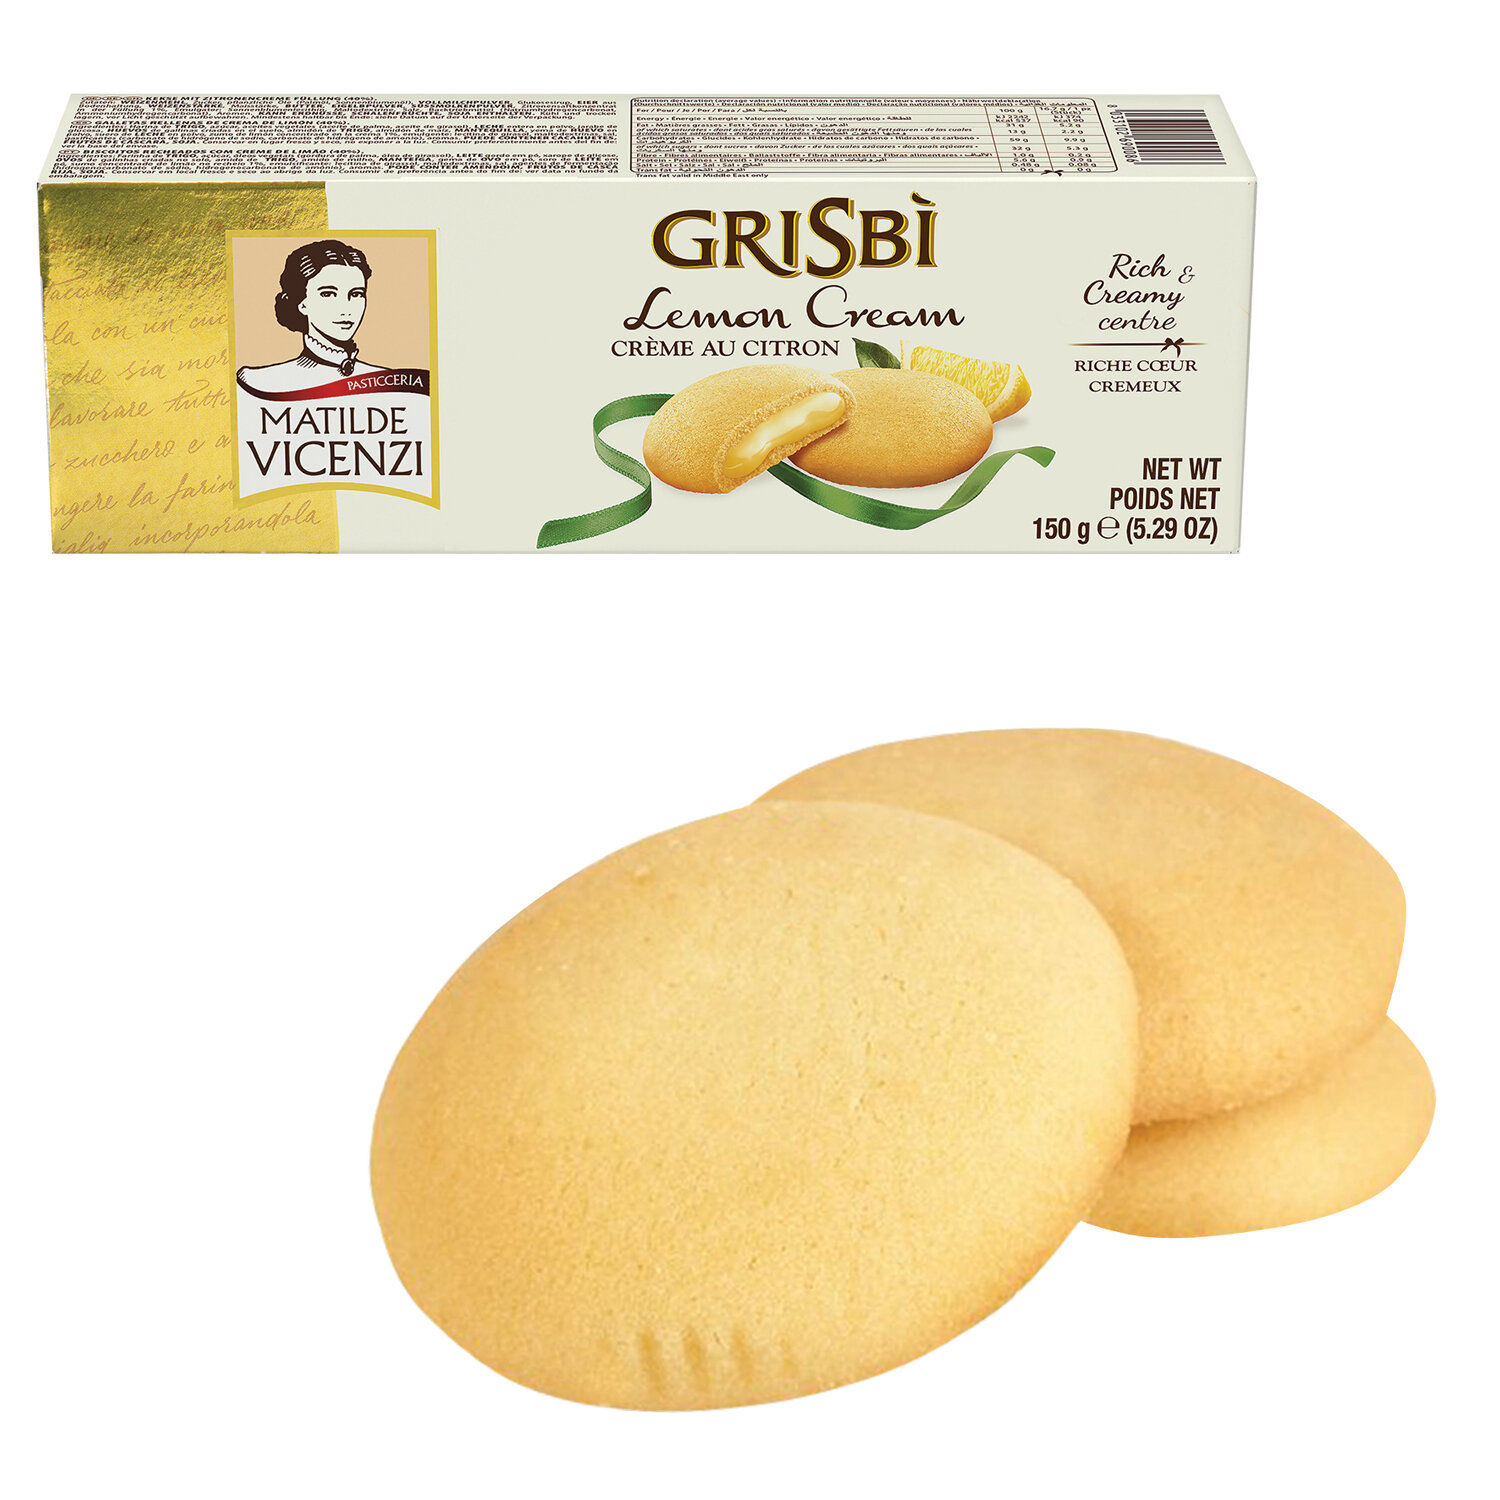 Печенье GRISBI 13828, комплект 2 шт.